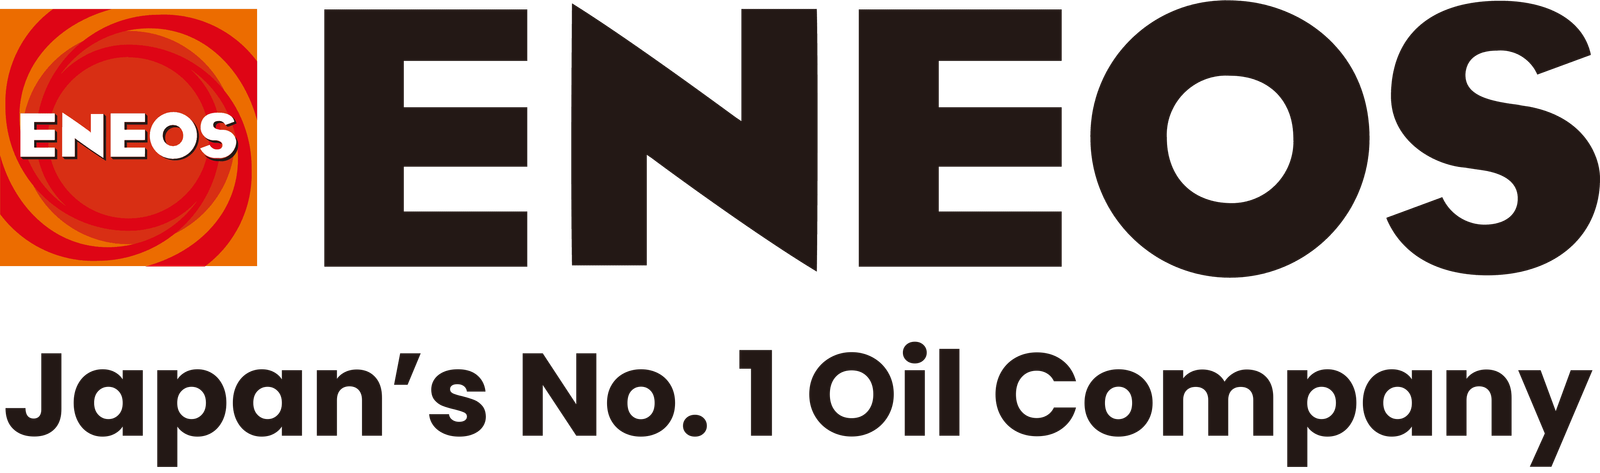 Japan's No.1 Oil Company | ENEOS